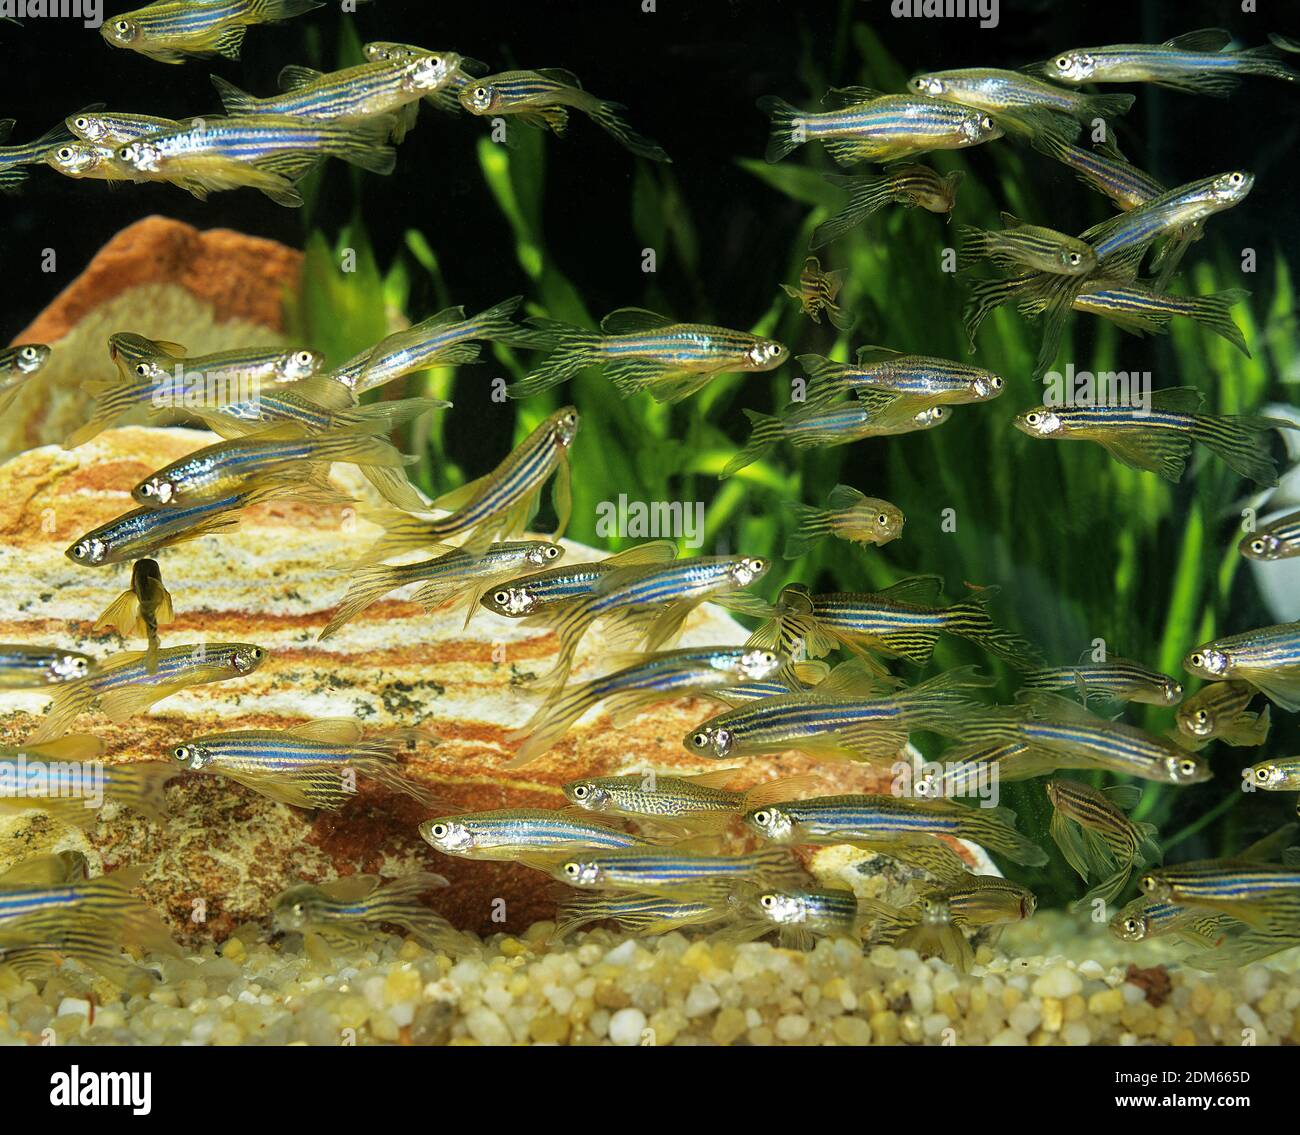 Long-Finned Zebra Fish, brachydanio rerio, Aquarium Fishes Stock Photo